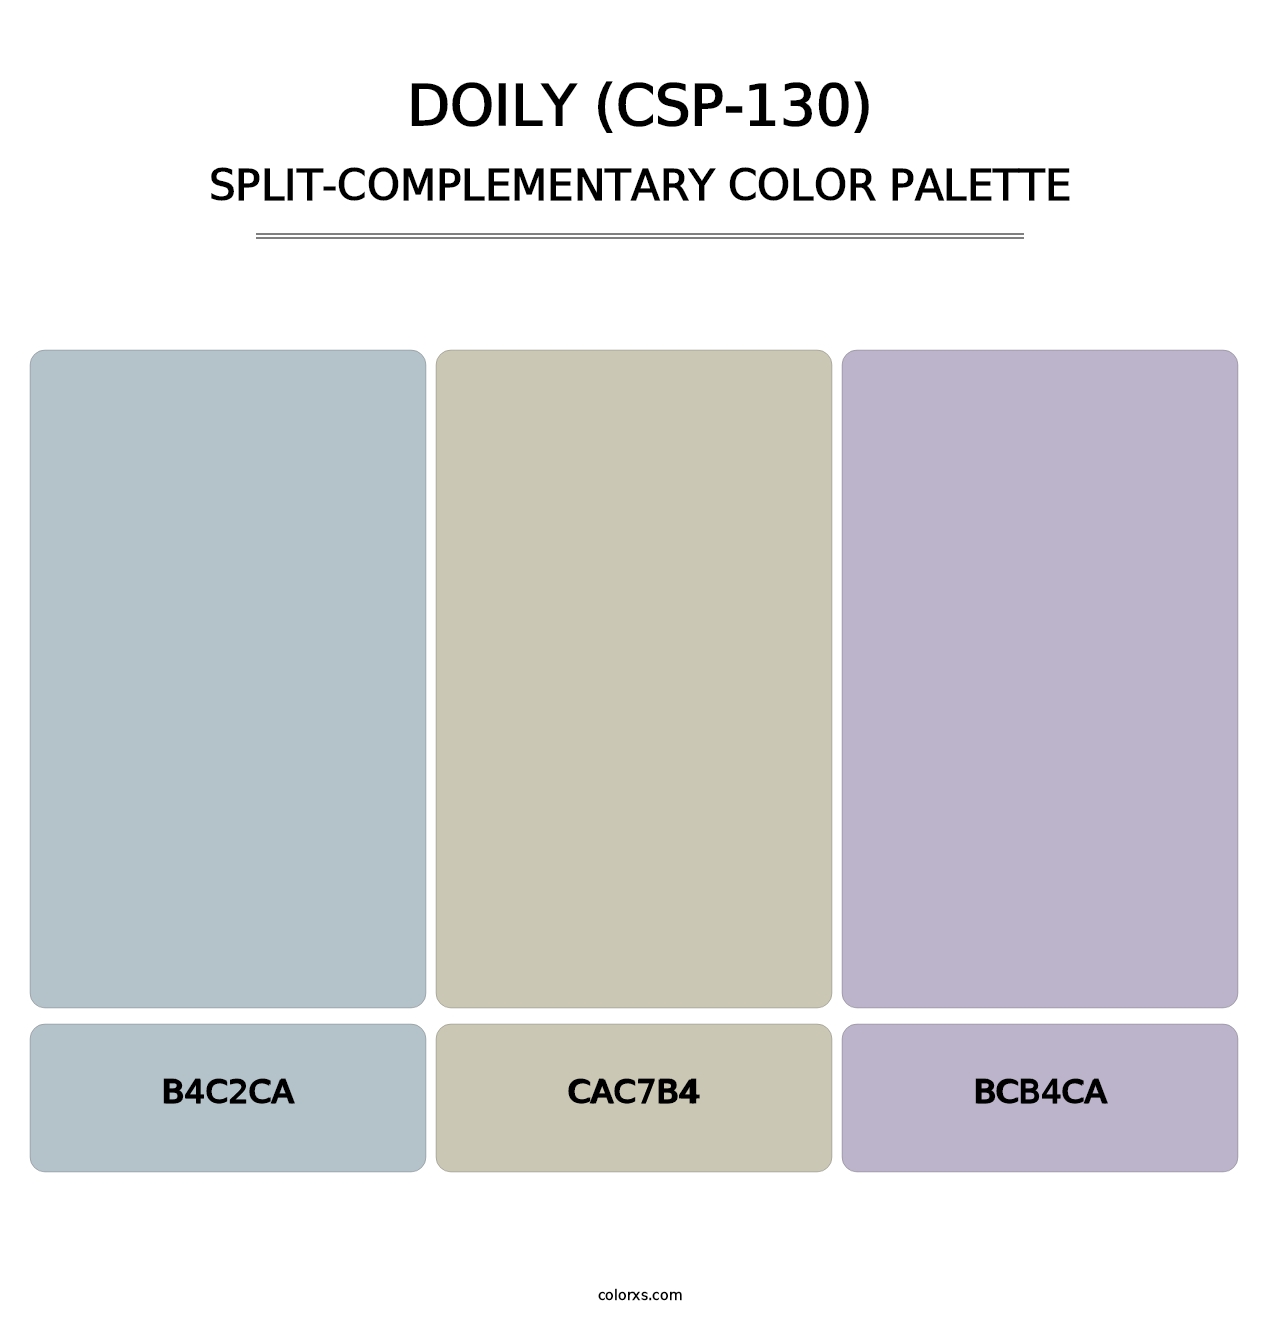 Doily (CSP-130) - Split-Complementary Color Palette